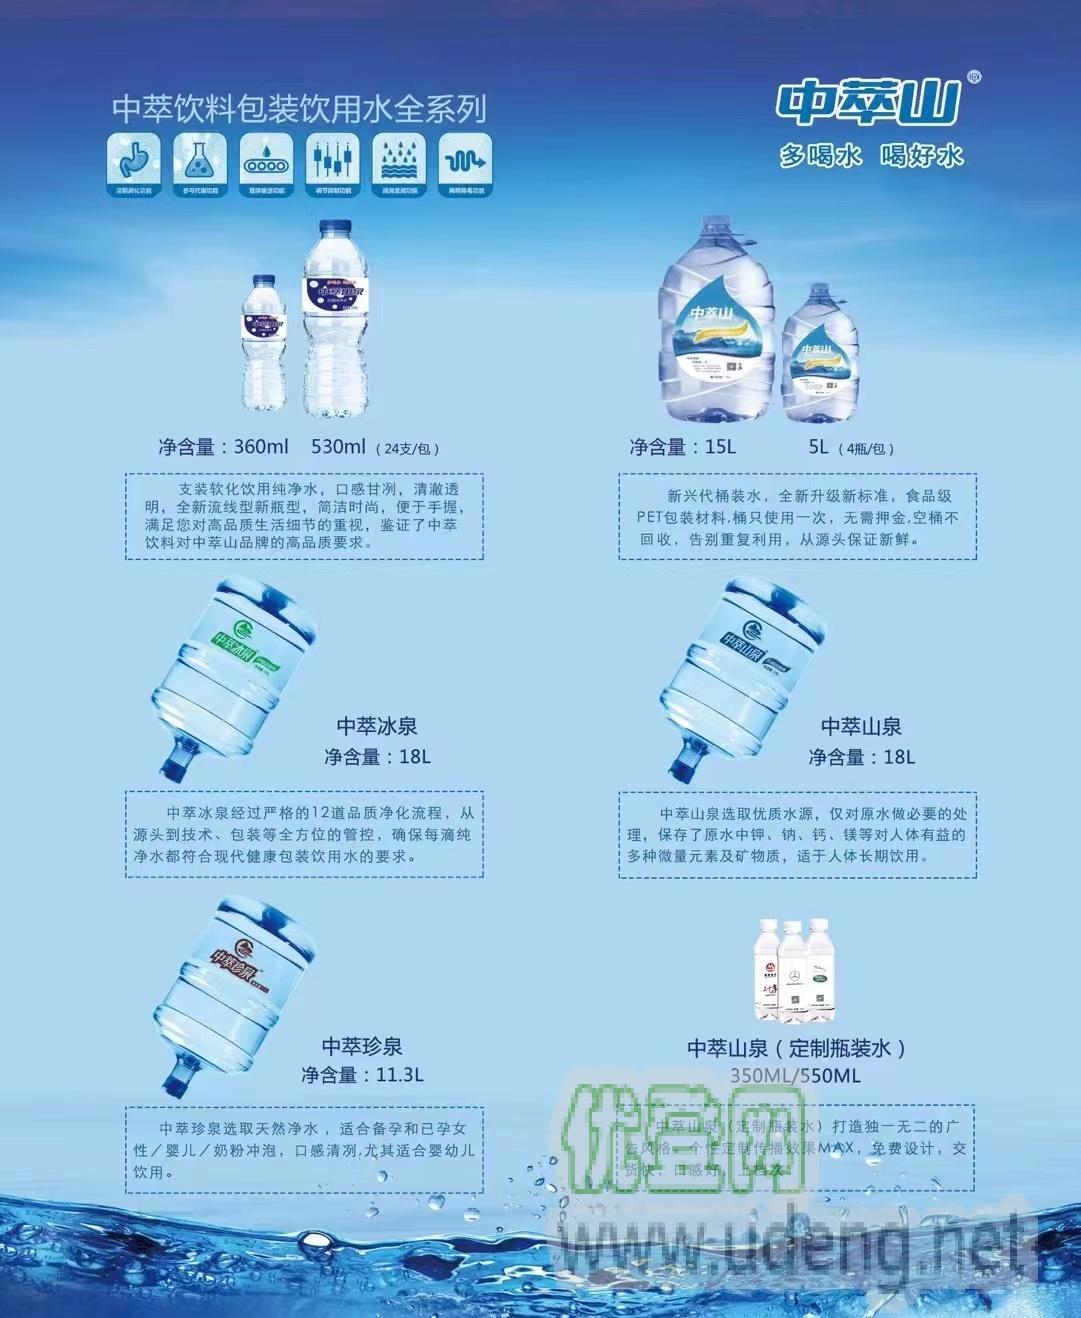 中萃饮料（广州）有限公司，南沙区，全广州配送18L、15、5L等各类规格包装饮用水及各类饮料产品、企业单位可提供饮水机，承接238ML-500ML定制LOGO支装水。